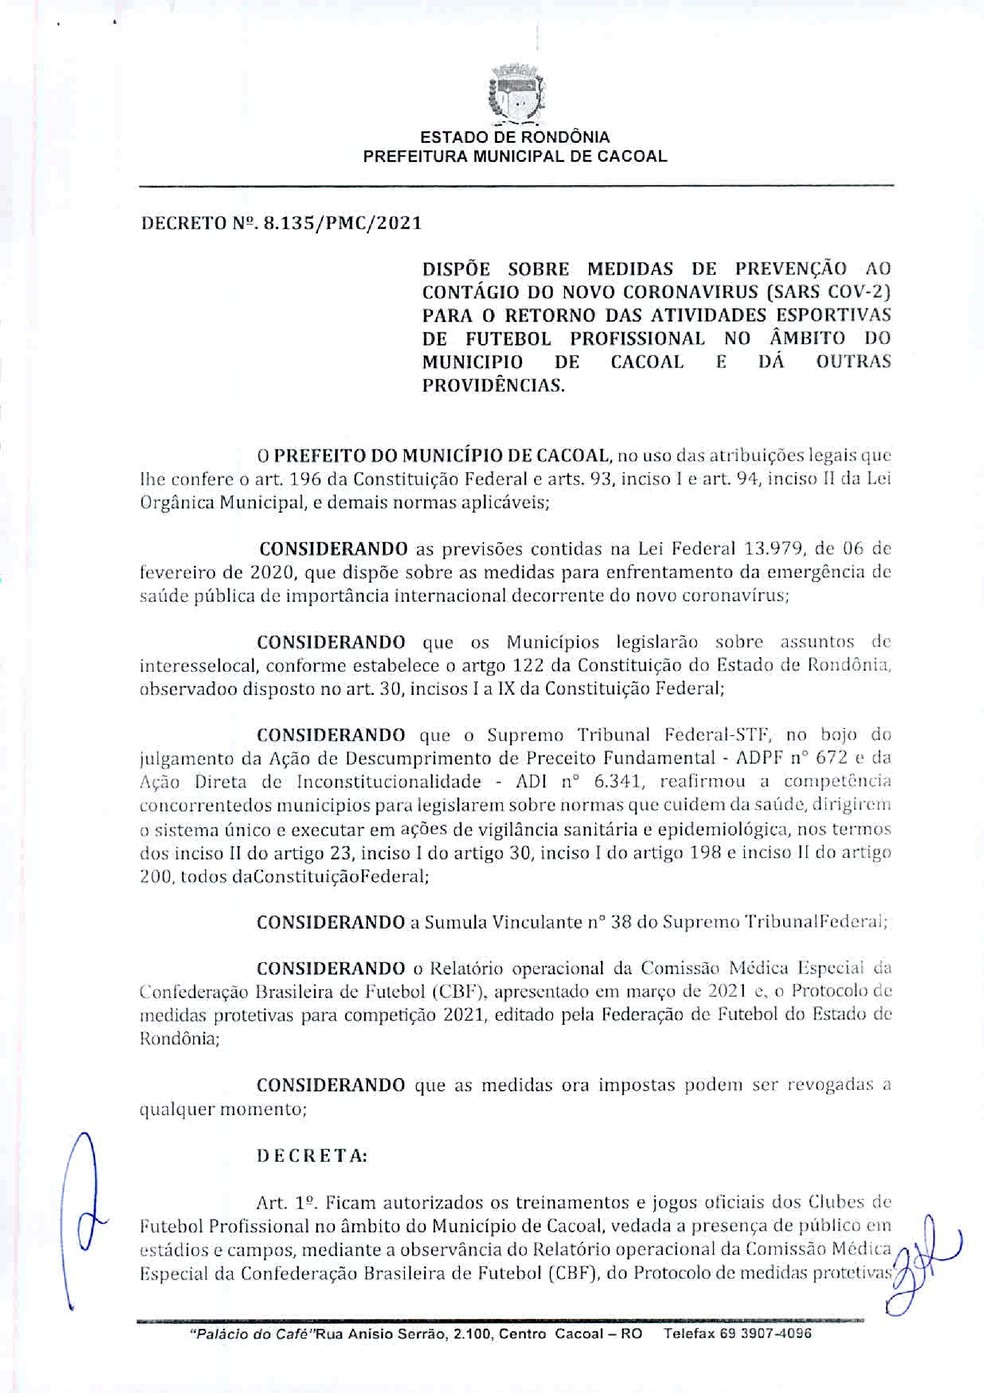 Decreto de Cacoal liberando atividades profissionais  (Foto: Divulgação )